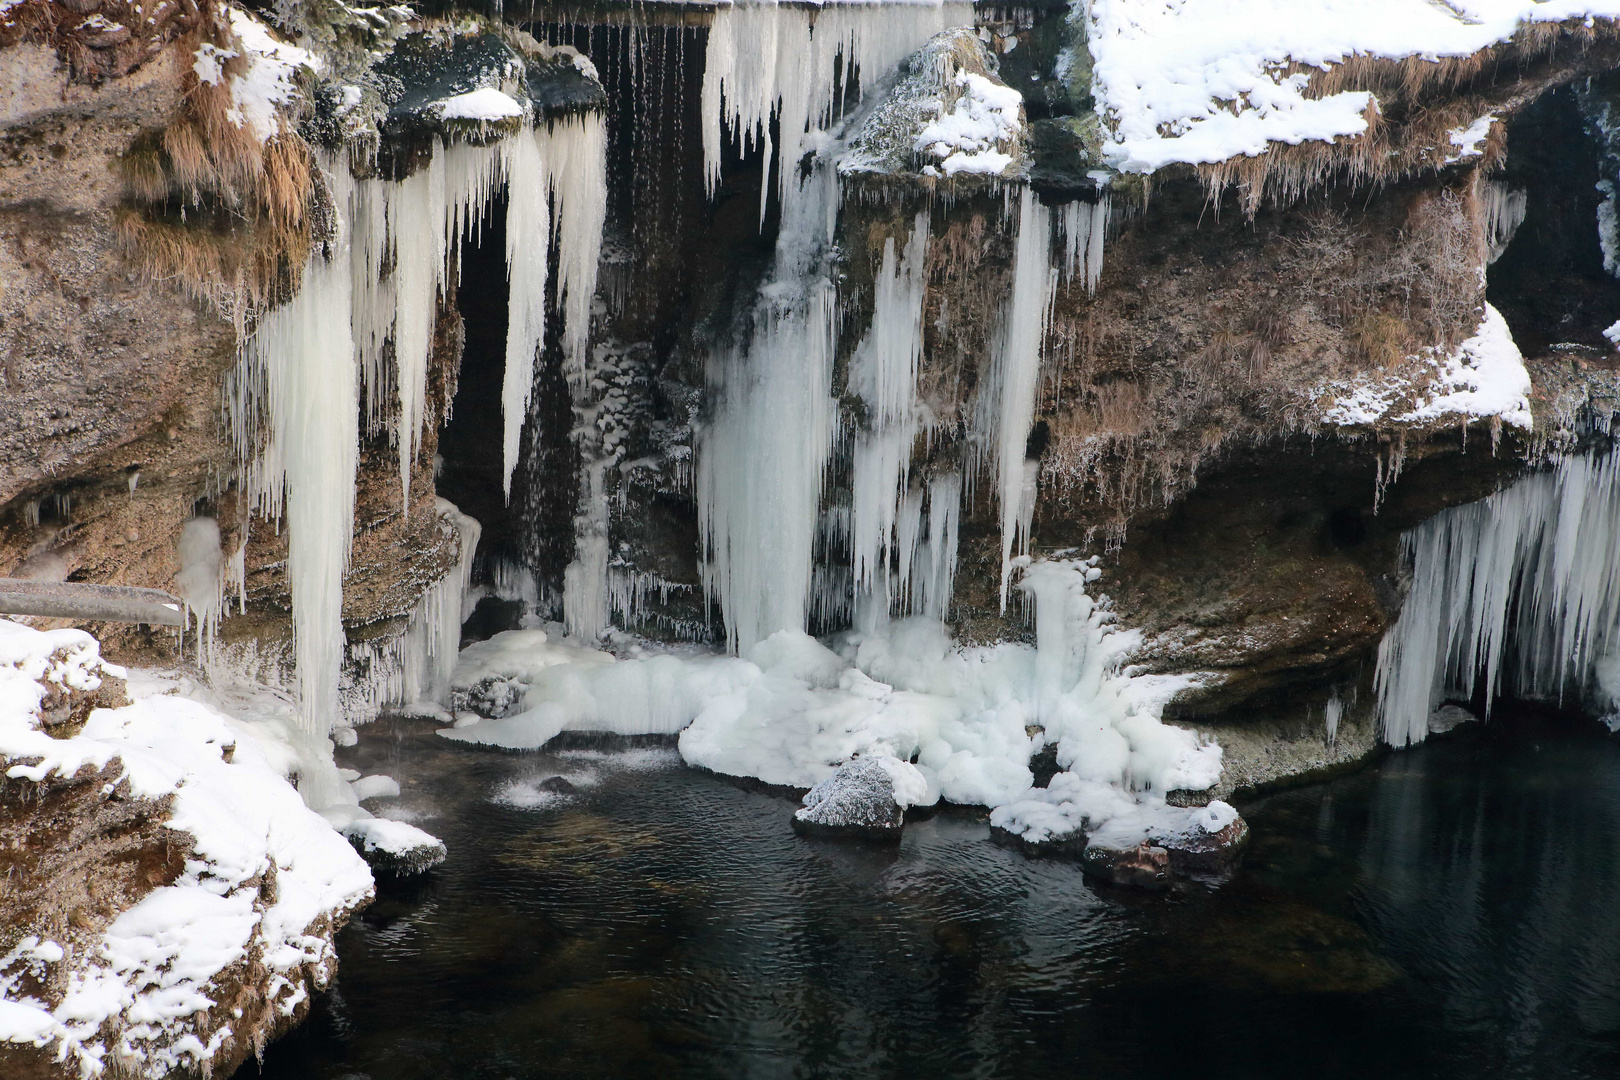 Waterfall in winter